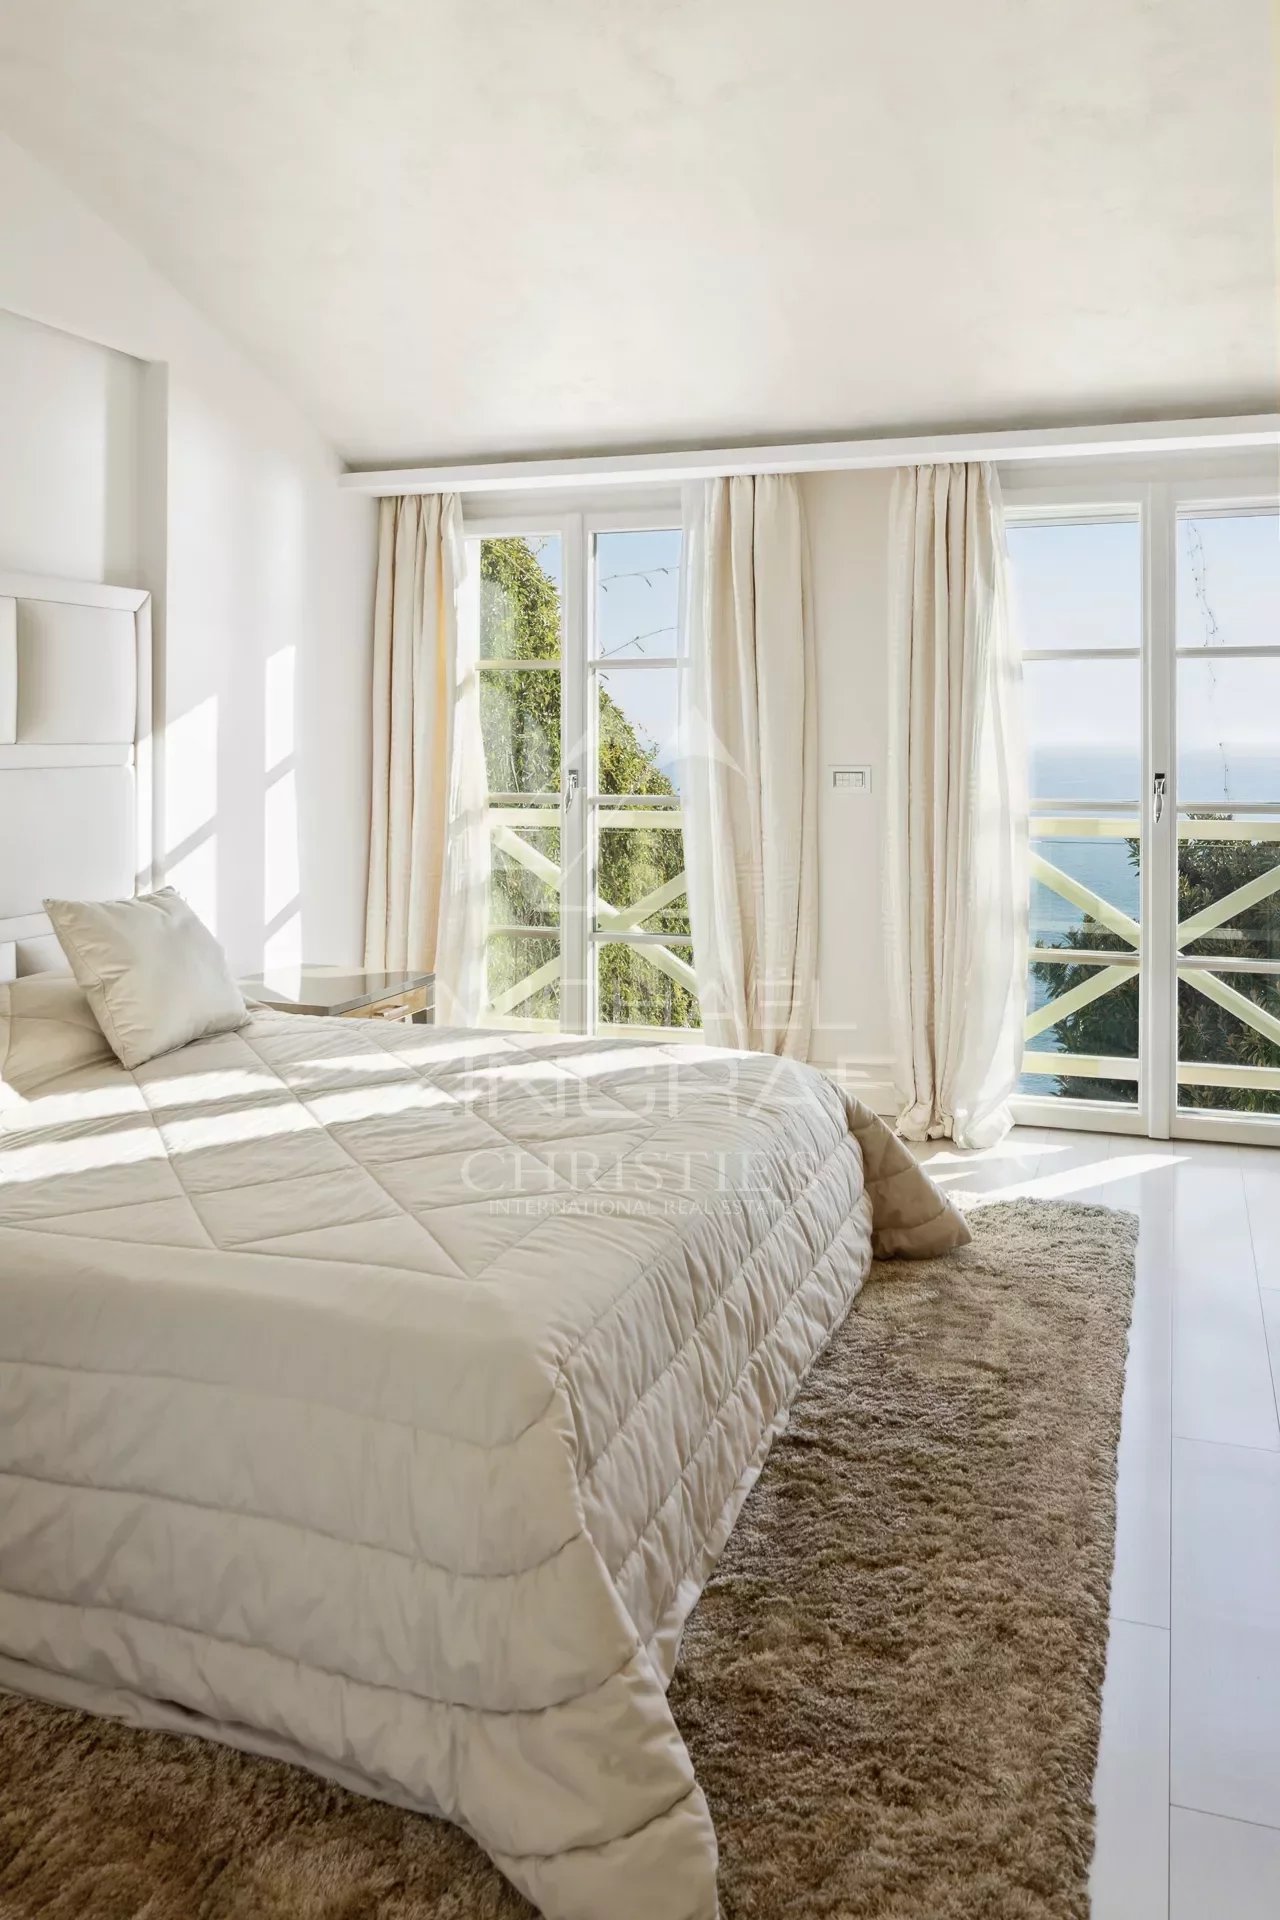 Luxurious villa at the gates of Monaco